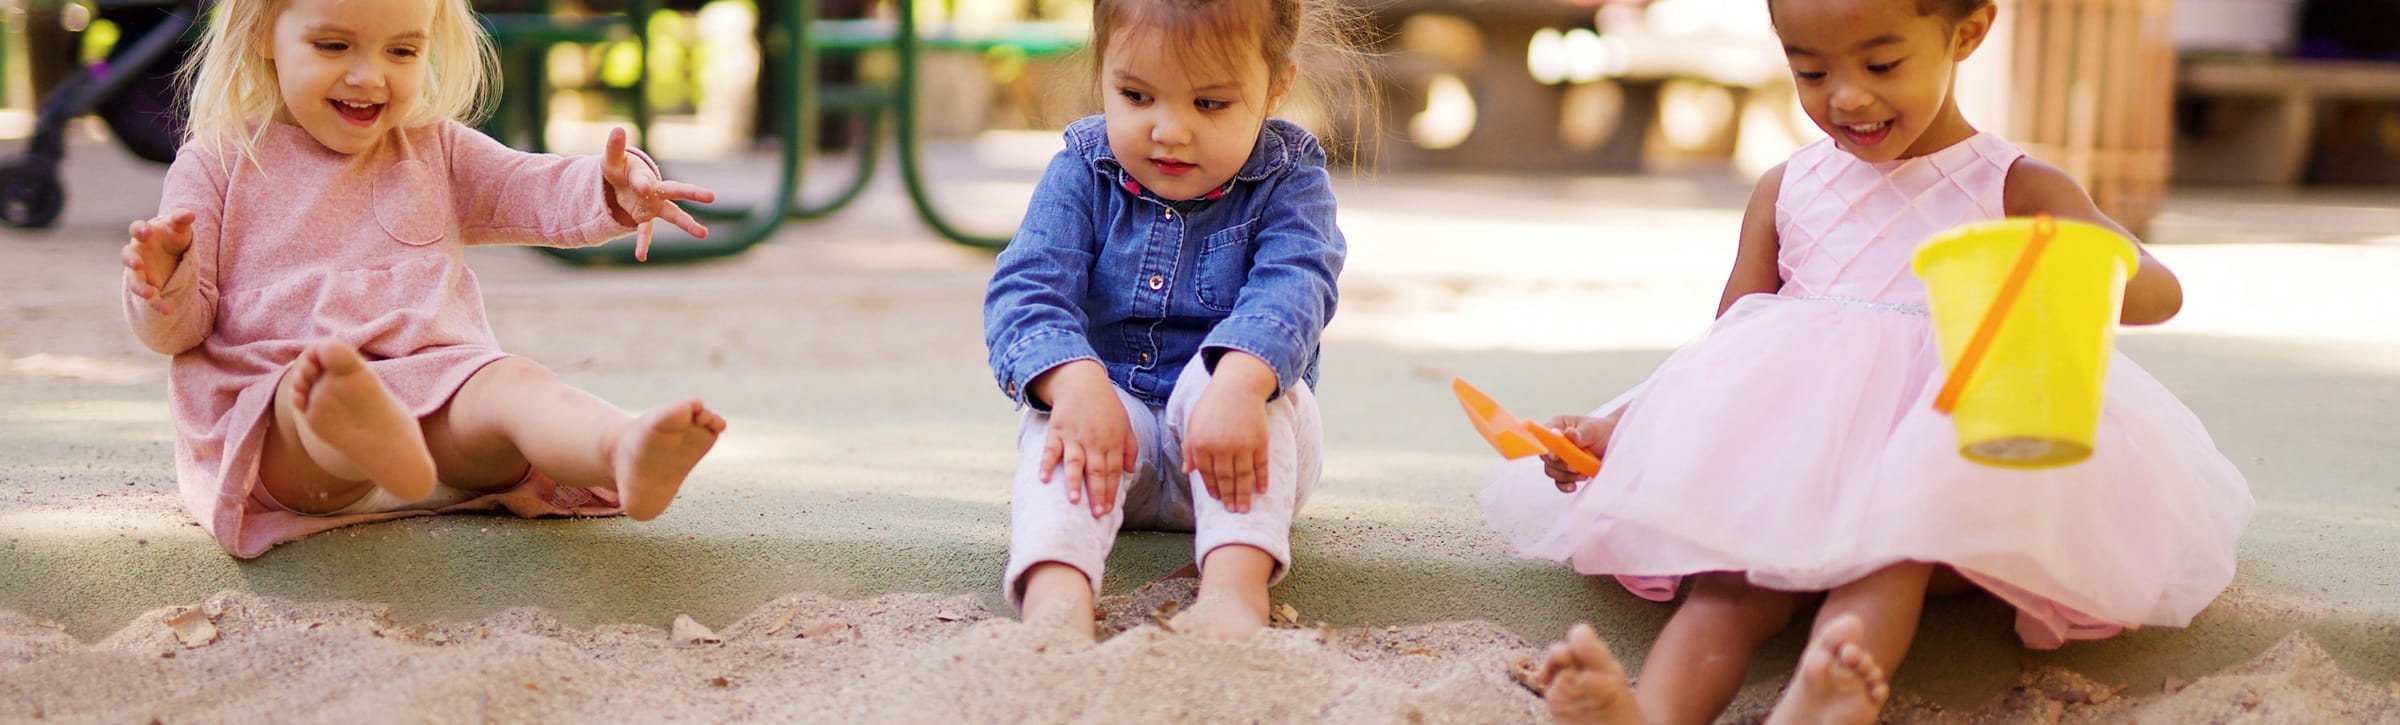 Kinder spielen in einem Sandkasten und haben Spaß mit Puppen